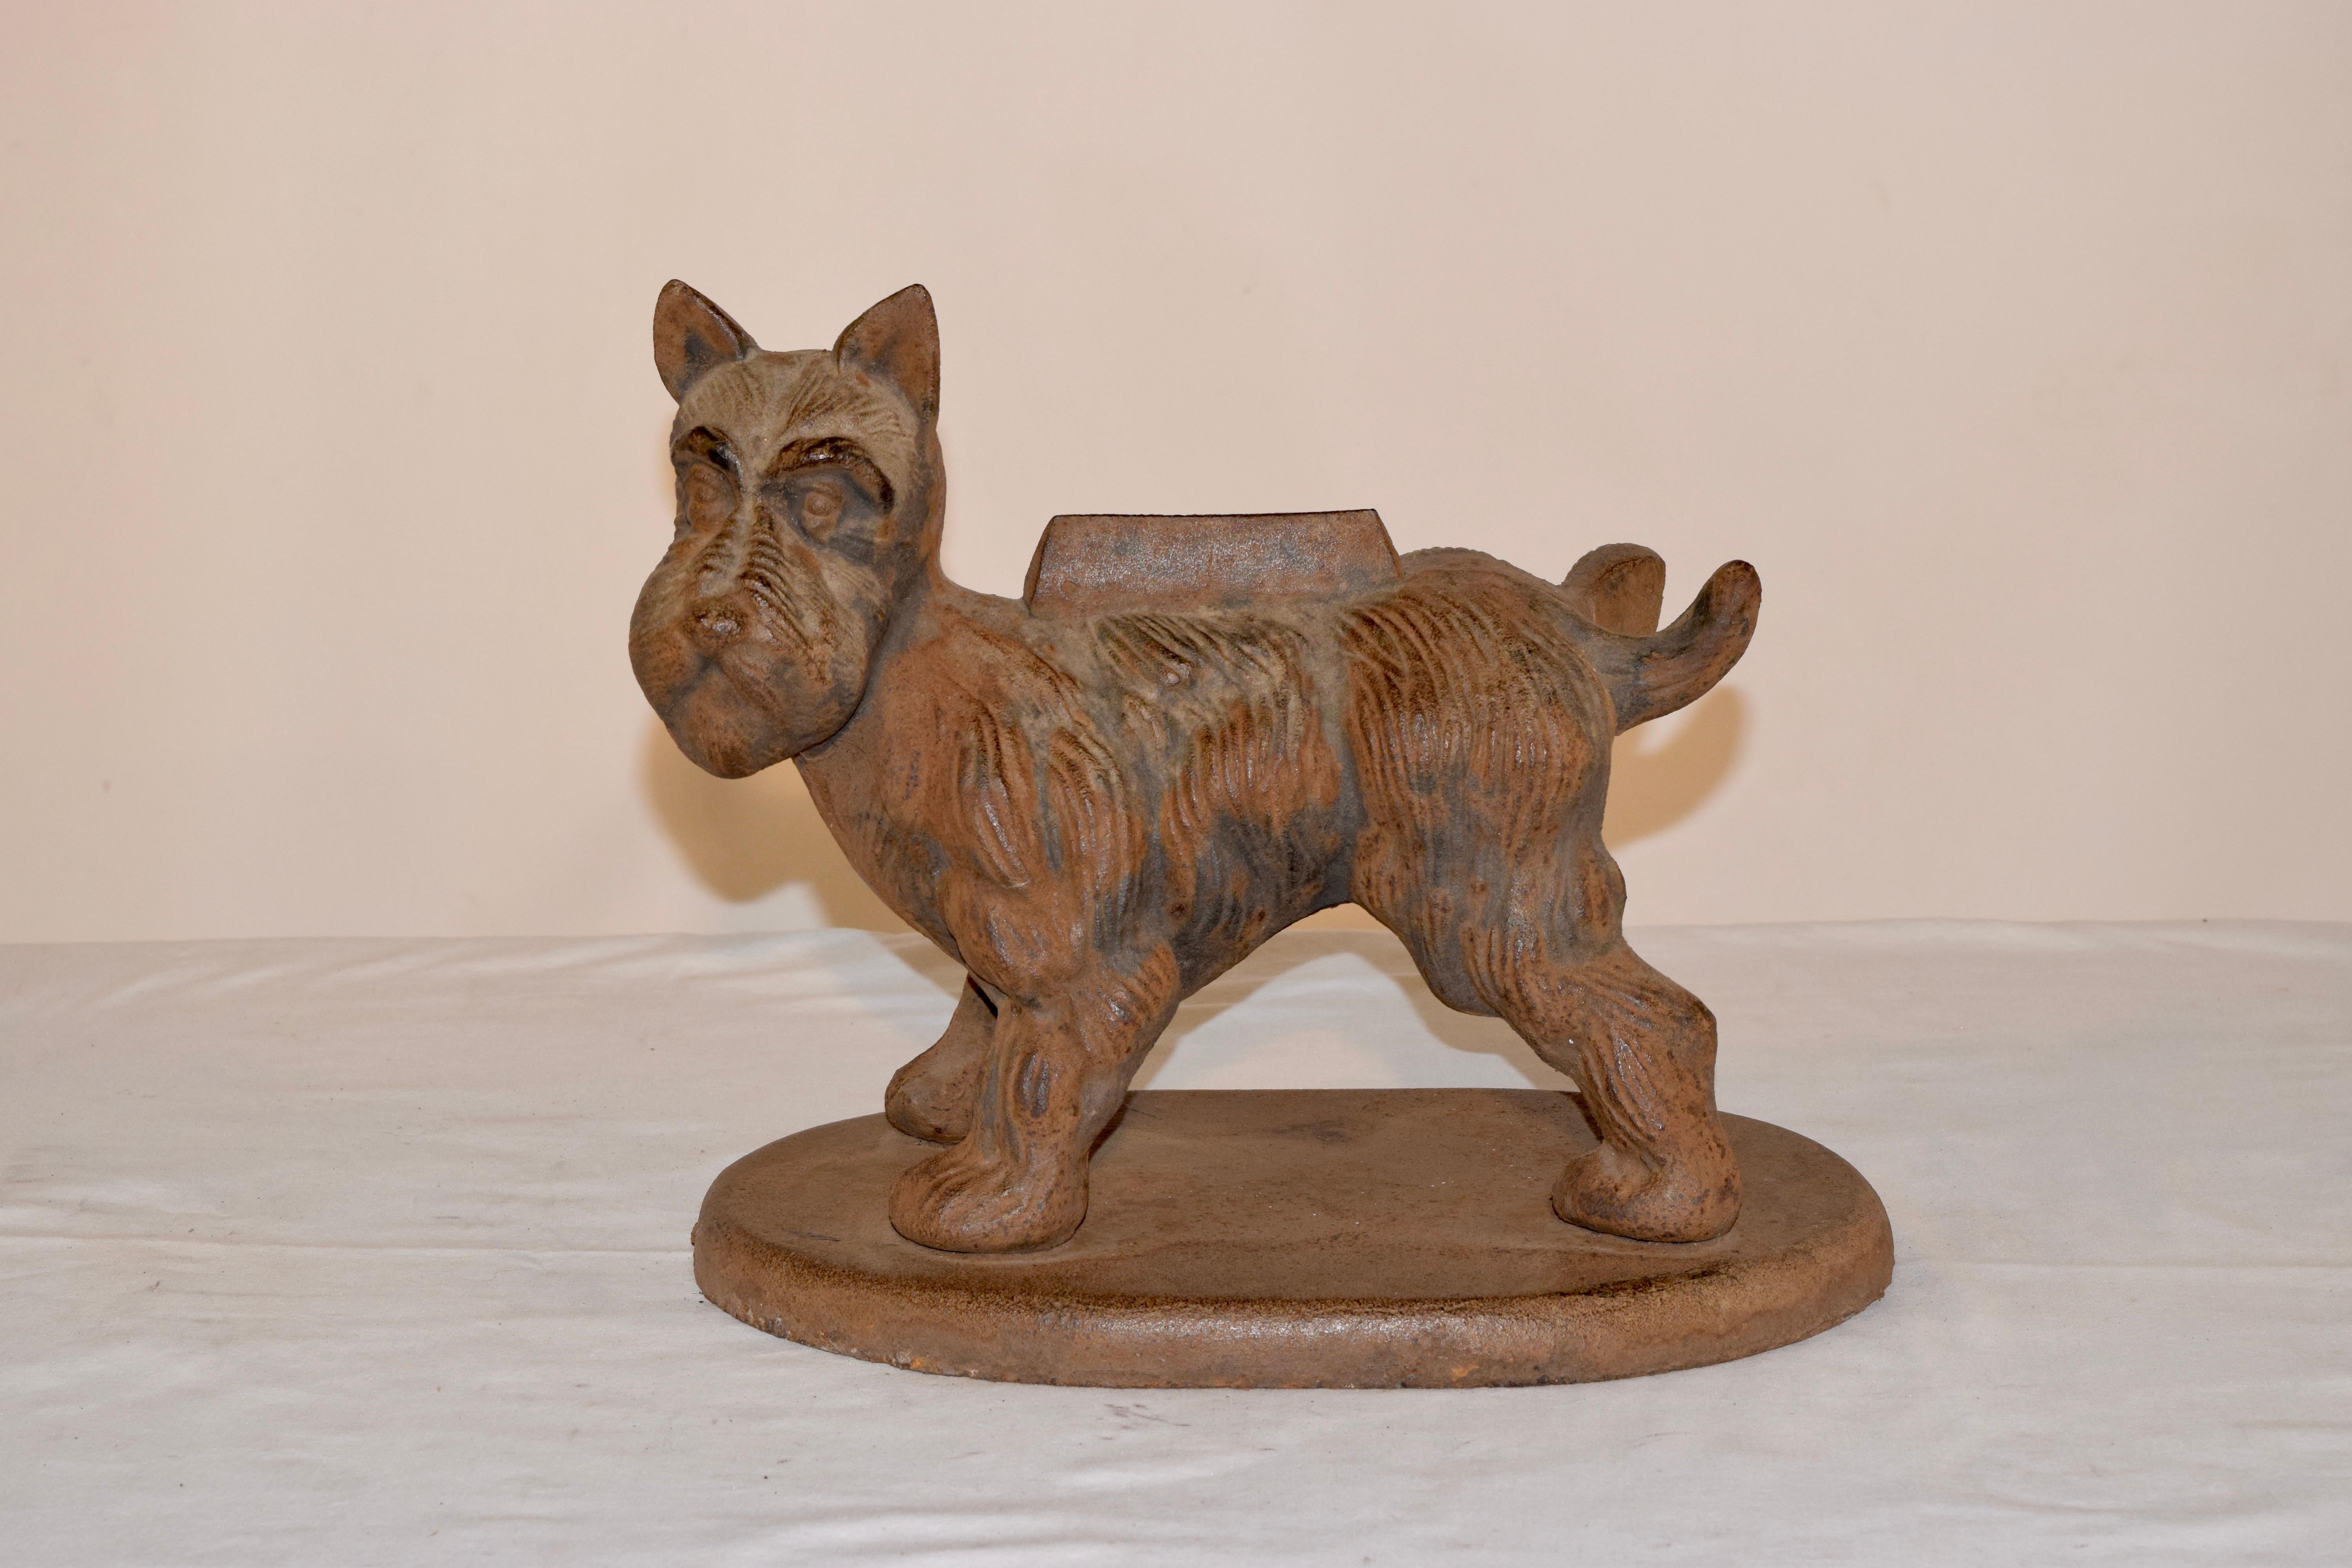 Englischer Schuhabstreifer aus dem späten 19. Jahrhundert aus Eisen in Form eines Terriers, der sein Bein hebt, um sein Revier zu markieren. Ein witziges Stück für Ihren Garten und ein echter Gesprächsstoff.